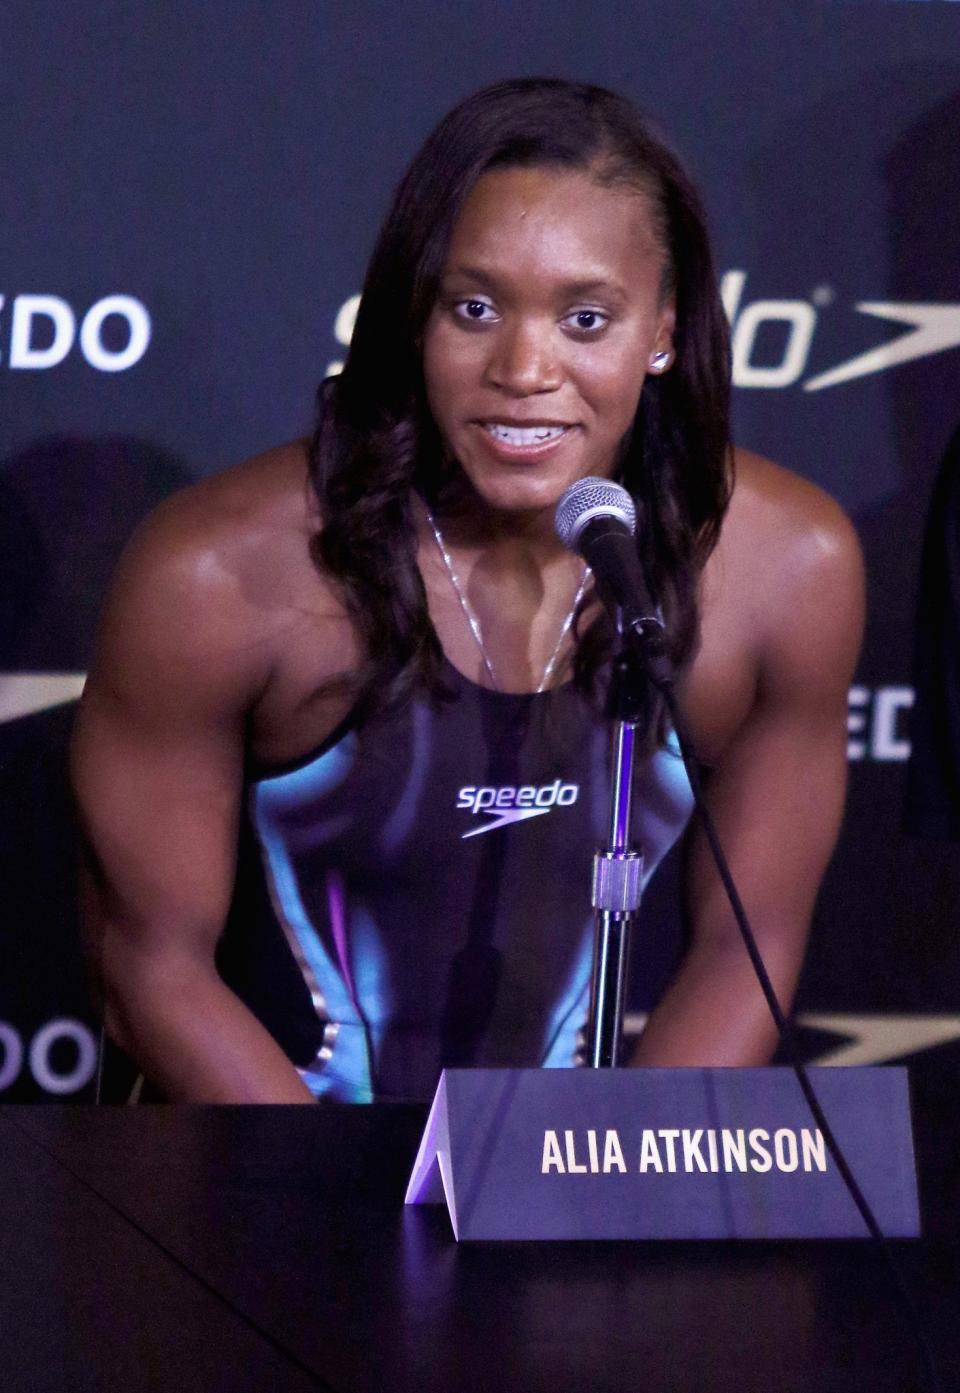 Alia Atkinson